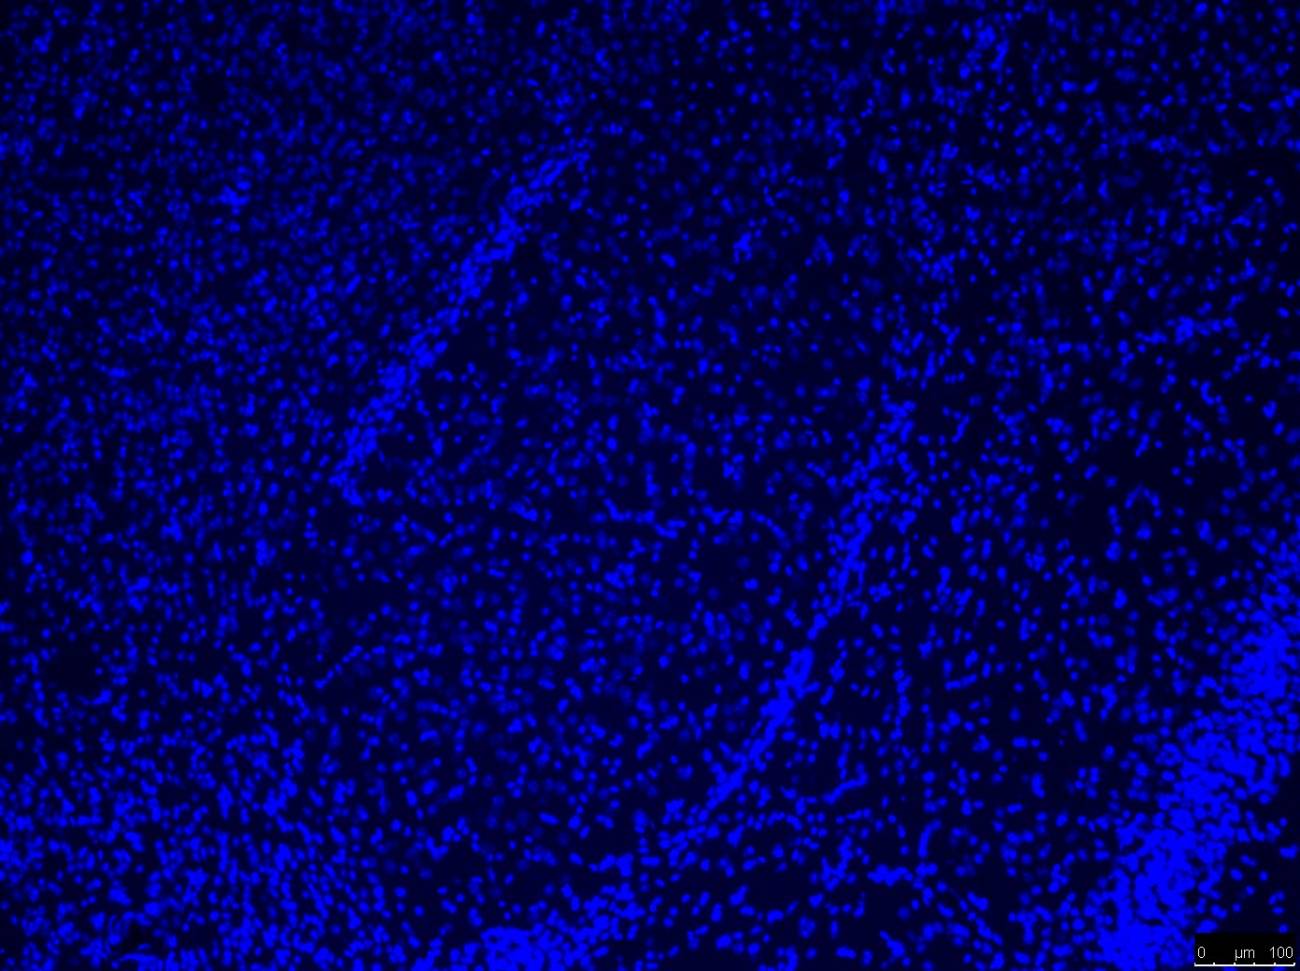 Imagen de microscopía de una amígdala de ratón.